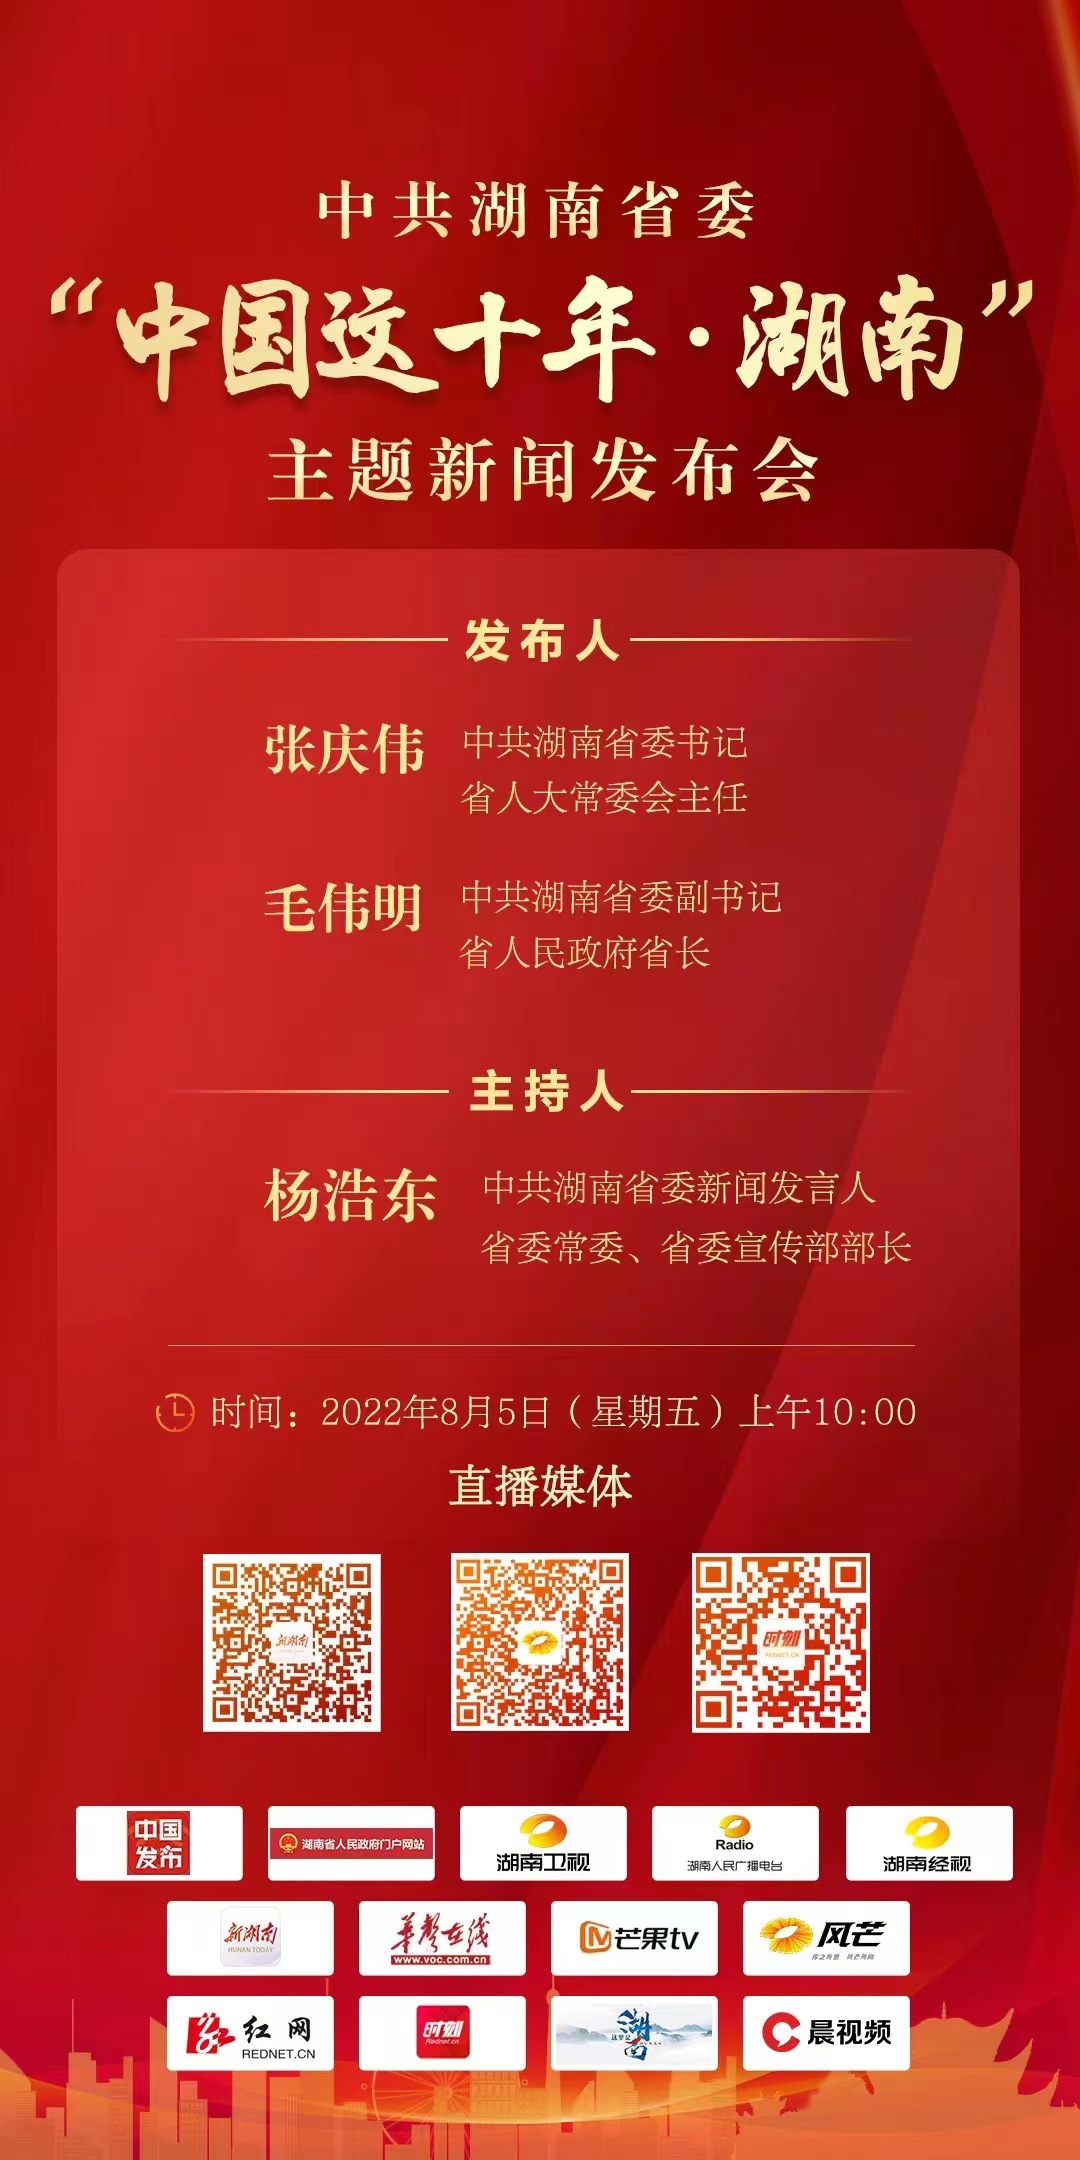 海报｜中共湖南省委将于8月5日举行“中国这十年·湖南”主题新闻发布会.jpg